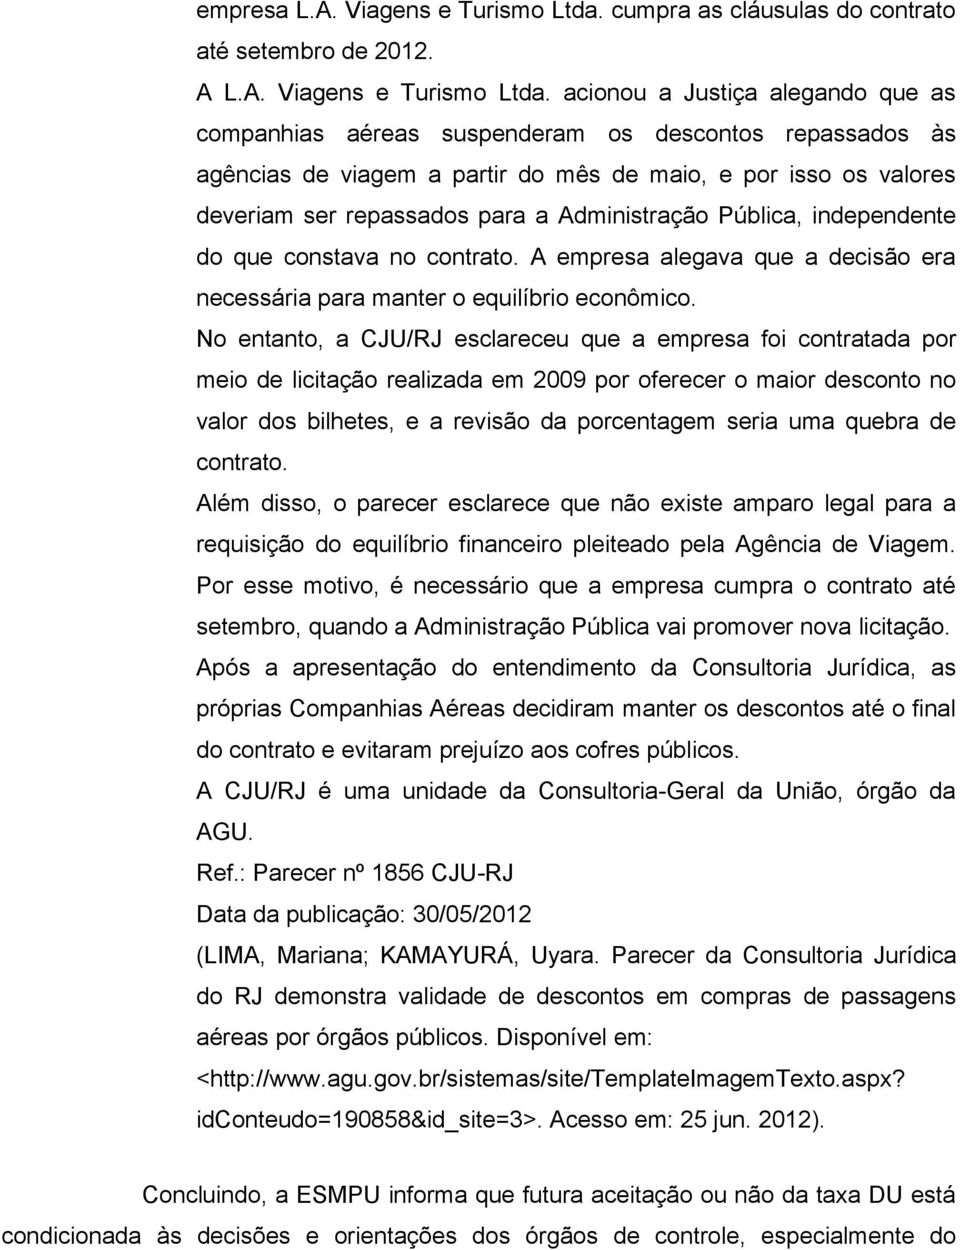 acionou a Justiça alegando que as companhias aéreas suspenderam os descontos repassados às agências de viagem a partir do mês de maio, e por isso os valores deveriam ser repassados para a